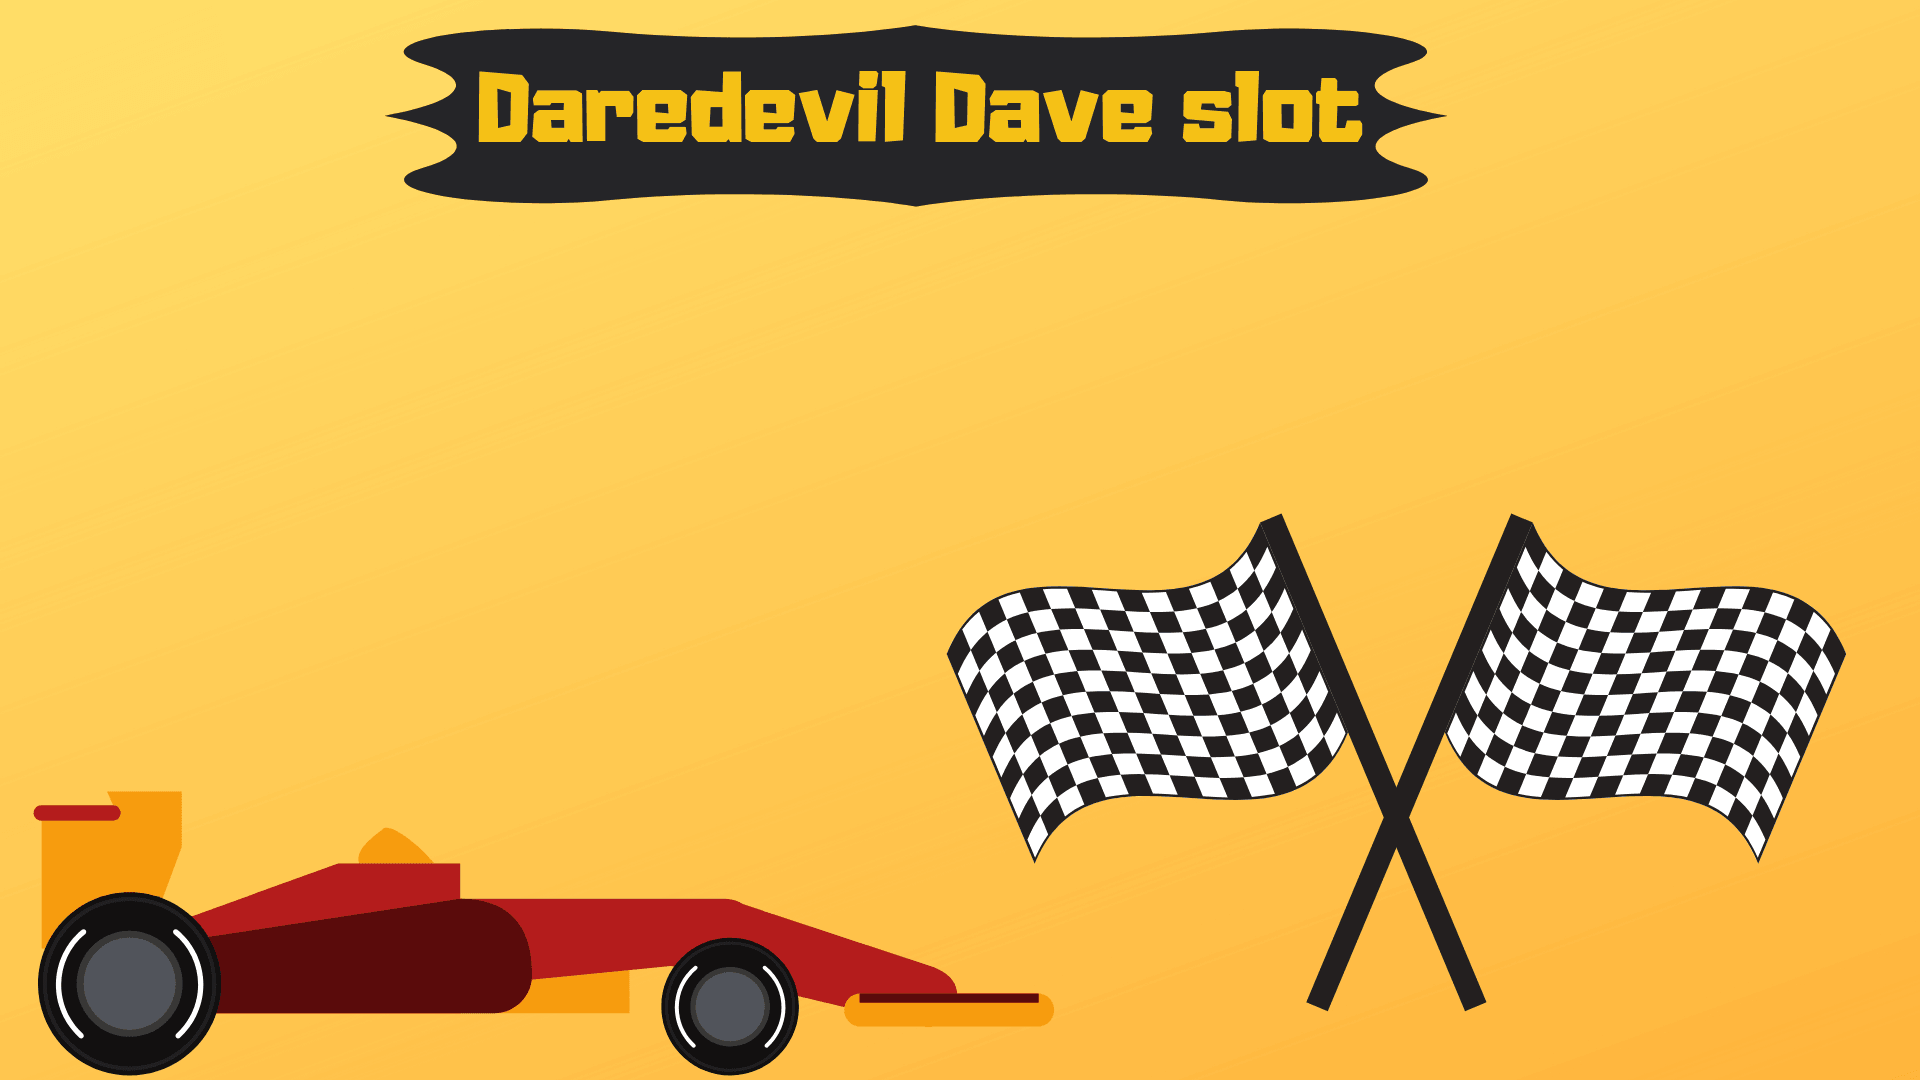 Daredevil Dave slot